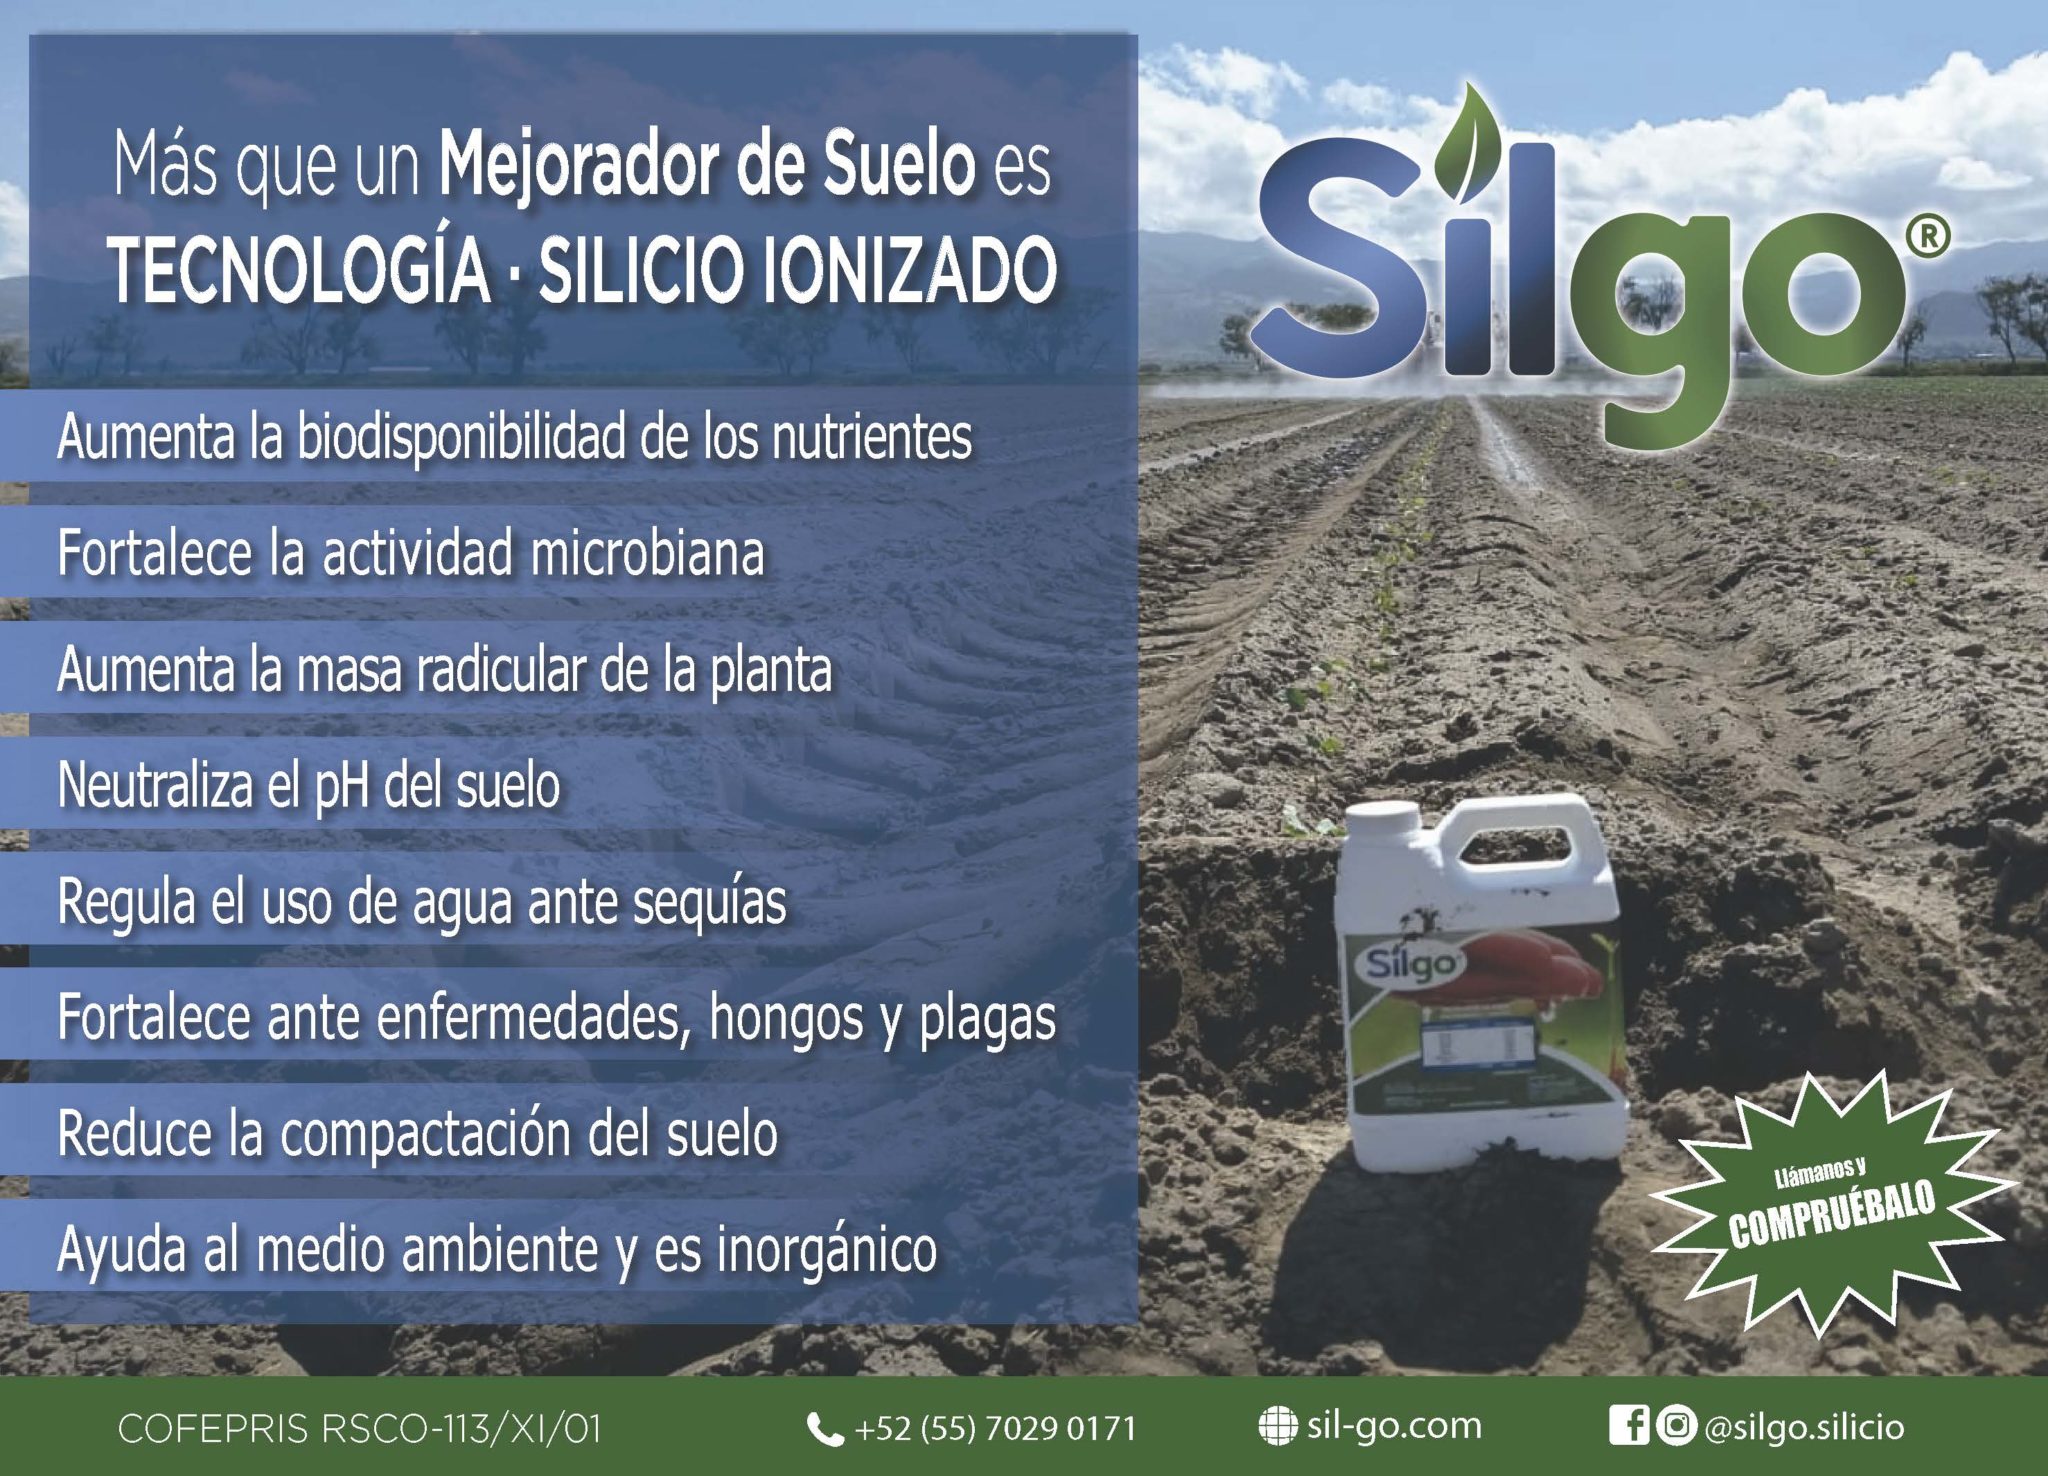 Conductividad Eléctrica Y Salinidad En Suelos Agrícolas Revista Infoagro México 8938